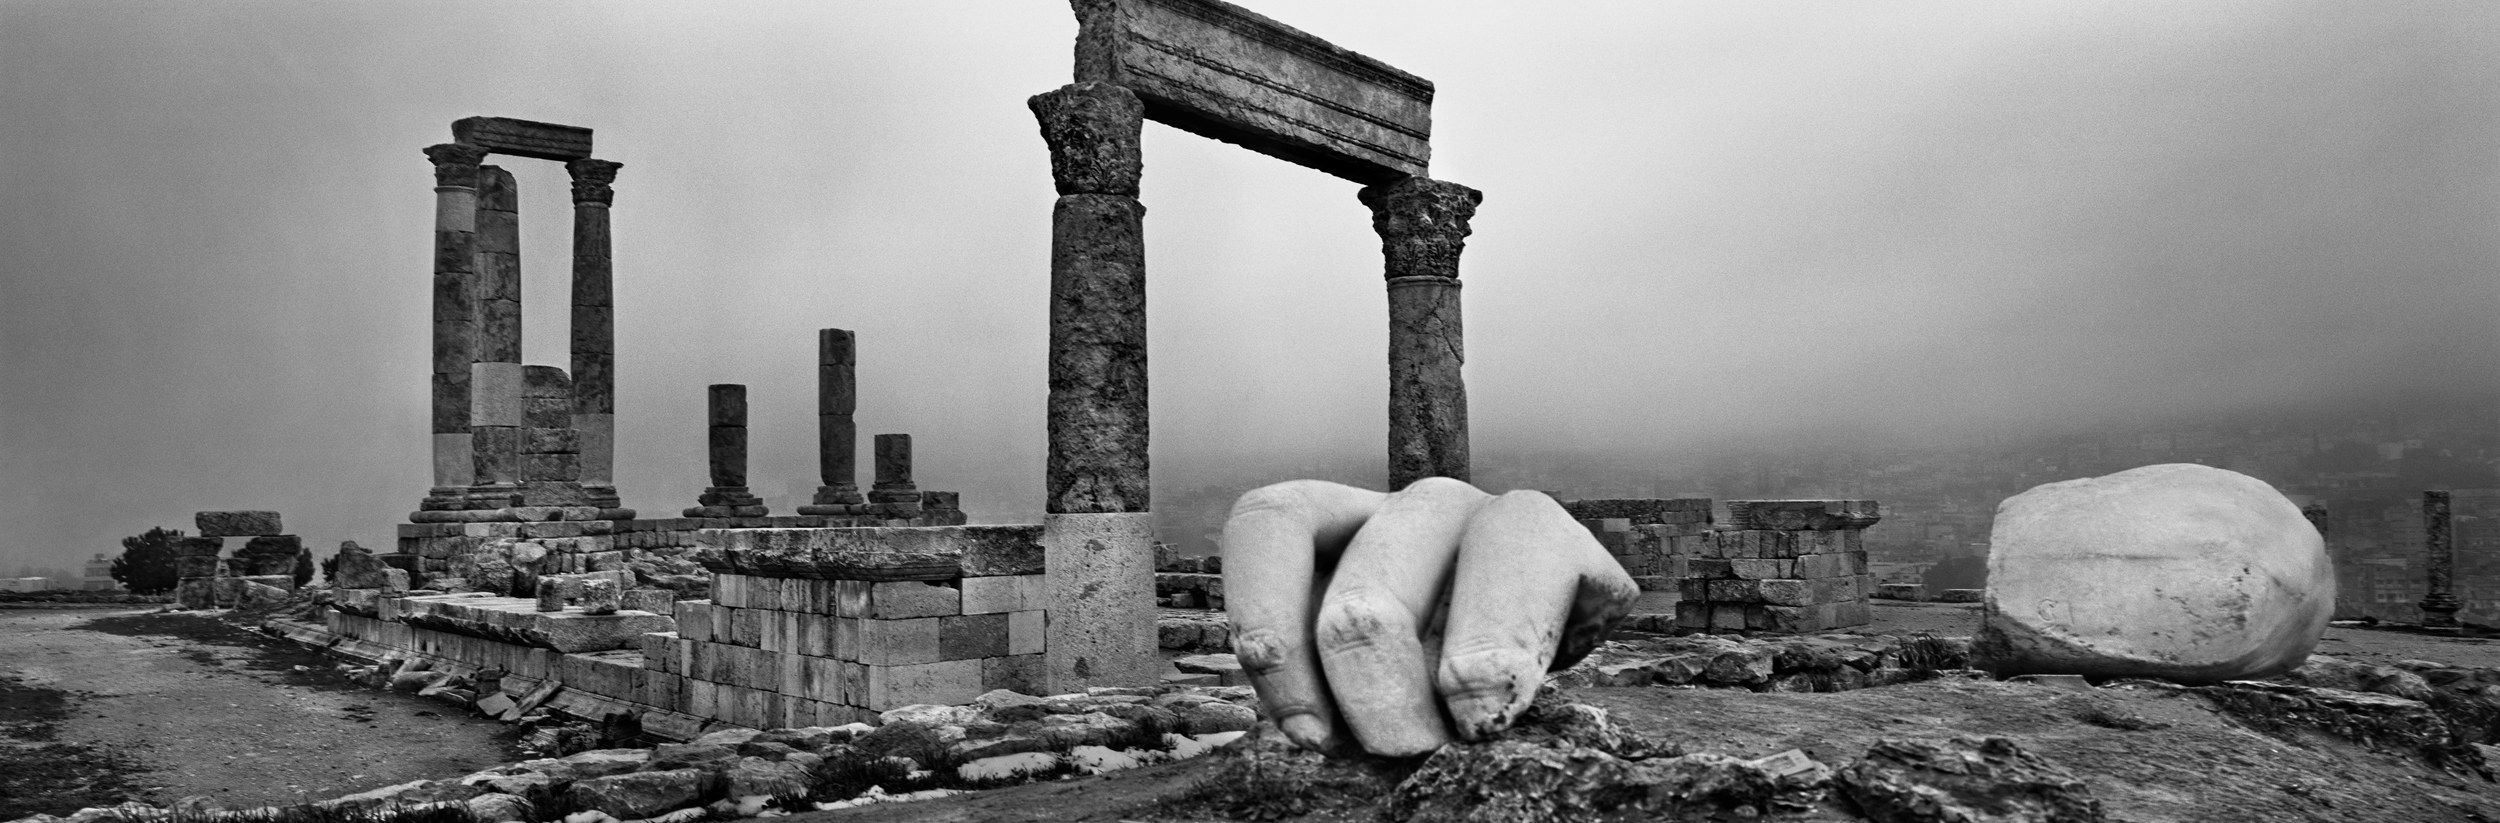 Josef Koudelka: Herkulův chrám